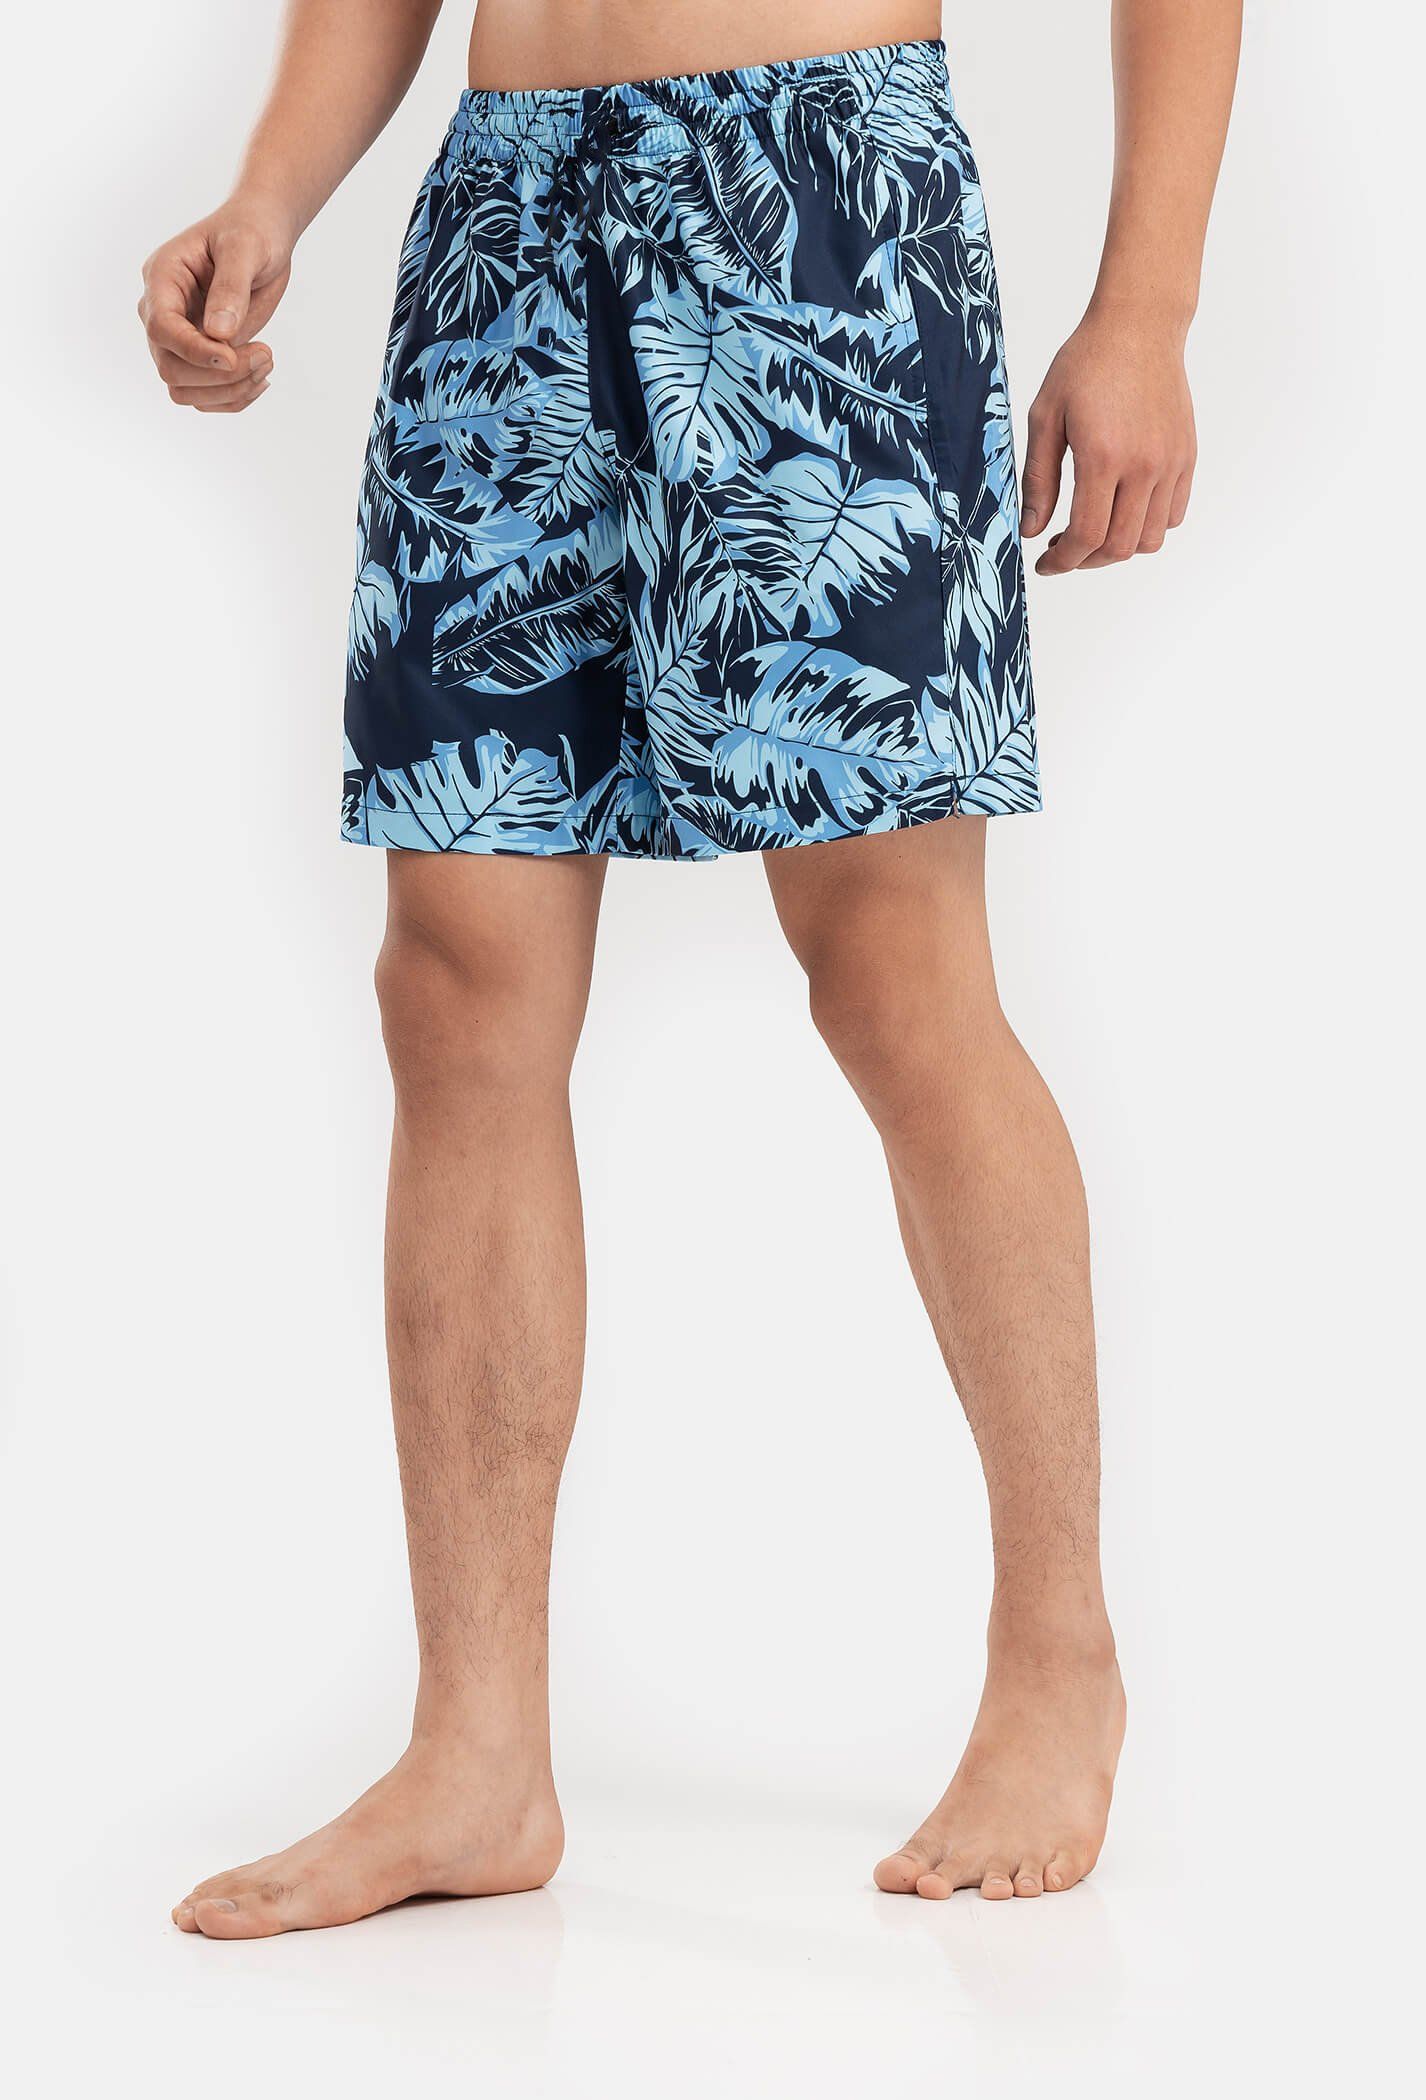 Outlet - Quần shorts nam Classic Beach có túi khoá sau xanh-nhat 3